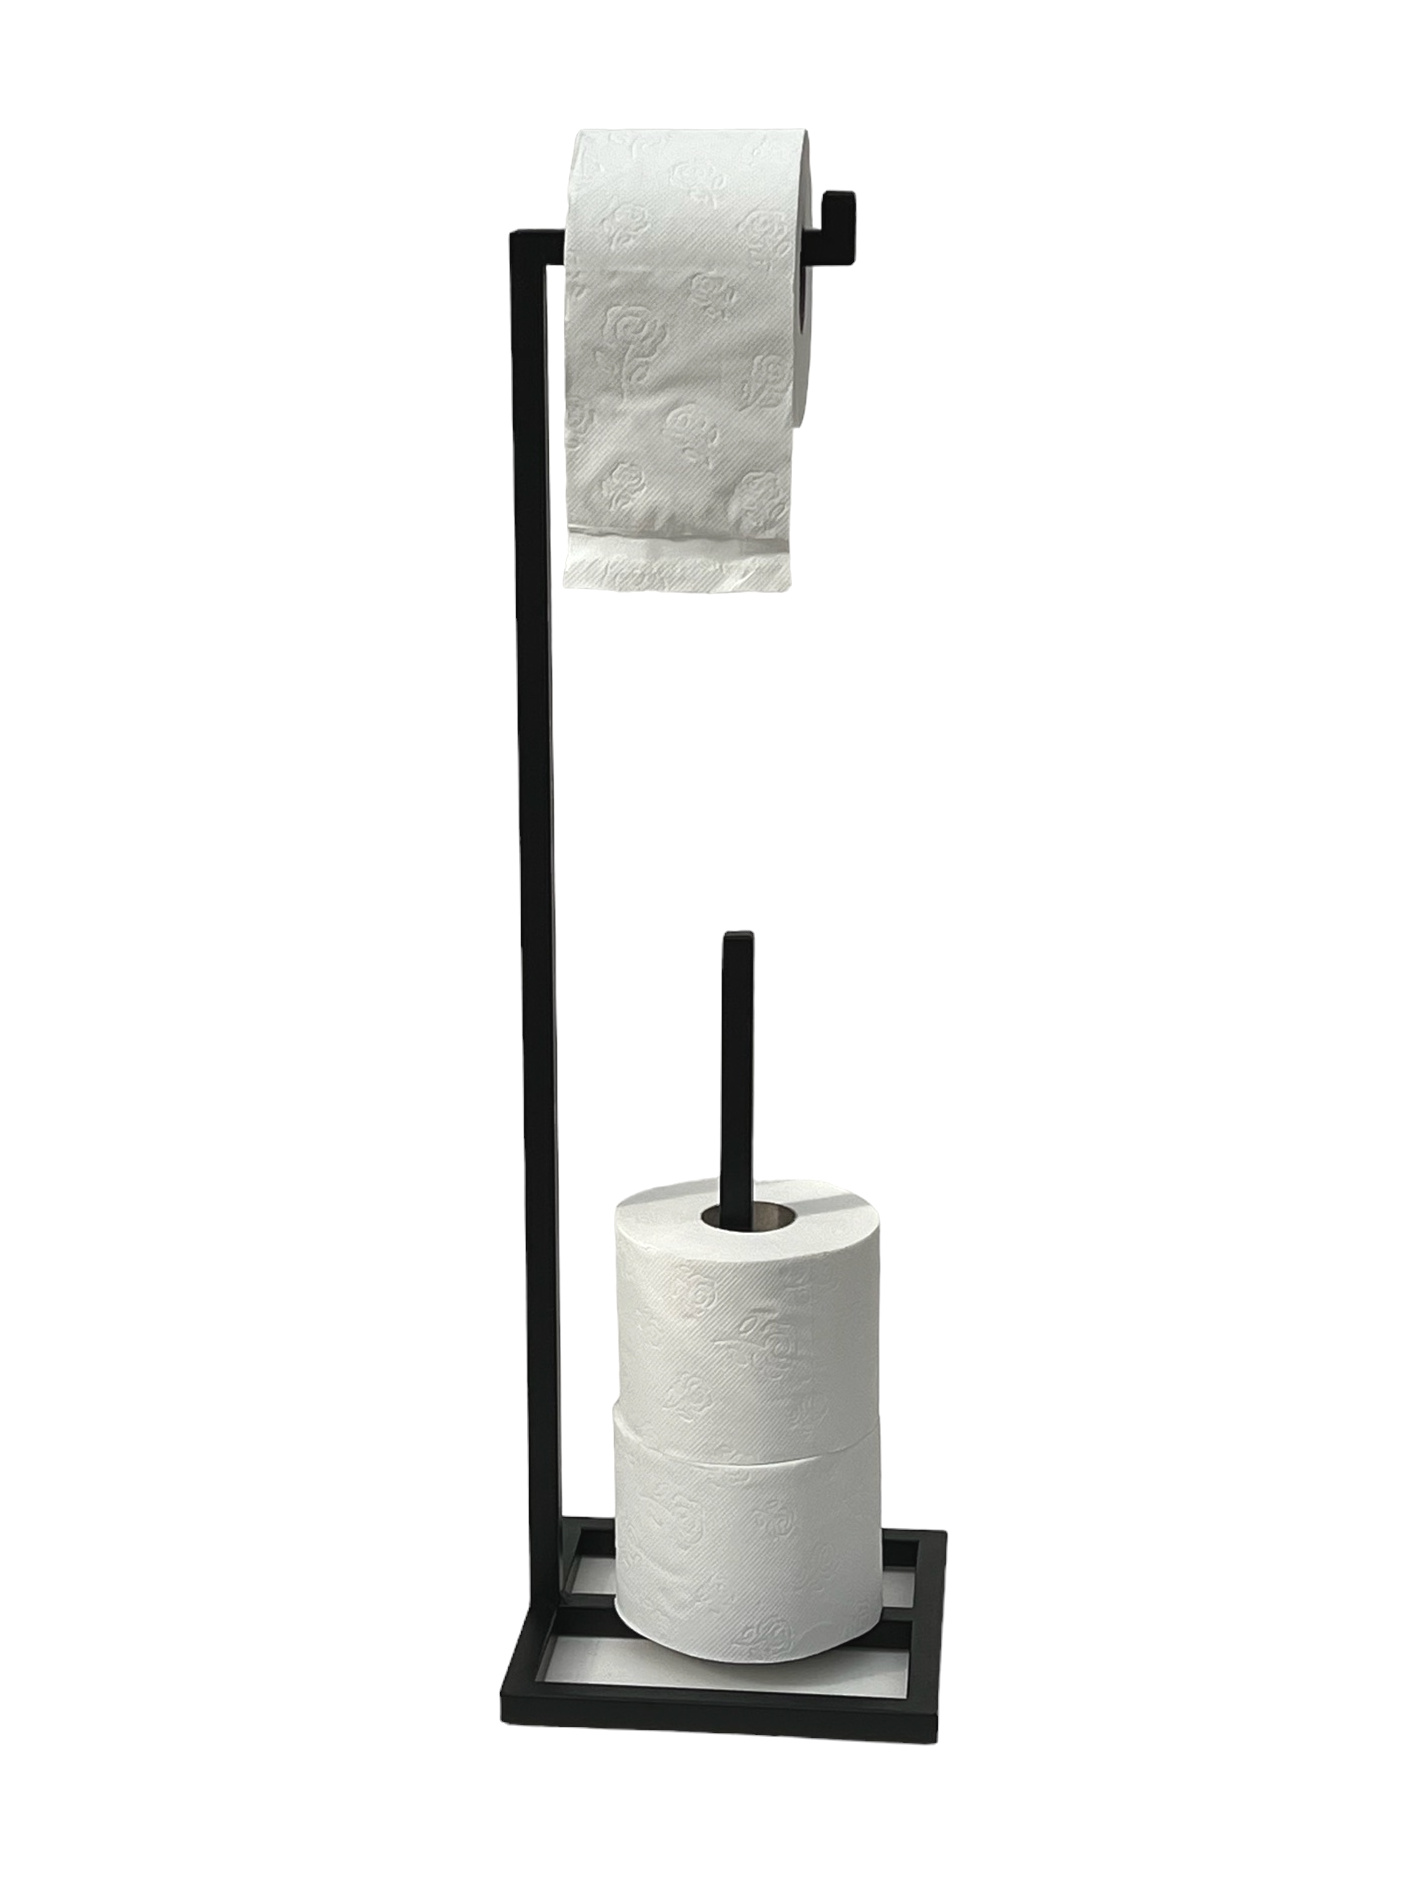 DanDiBo Toilettenpapierhalter Rollenhalter-DanDiBo Stehend Gäste Papierhalter Ständer Schwarz 96459 Metall Klopapierhalter WC Ersatzrollenhalter